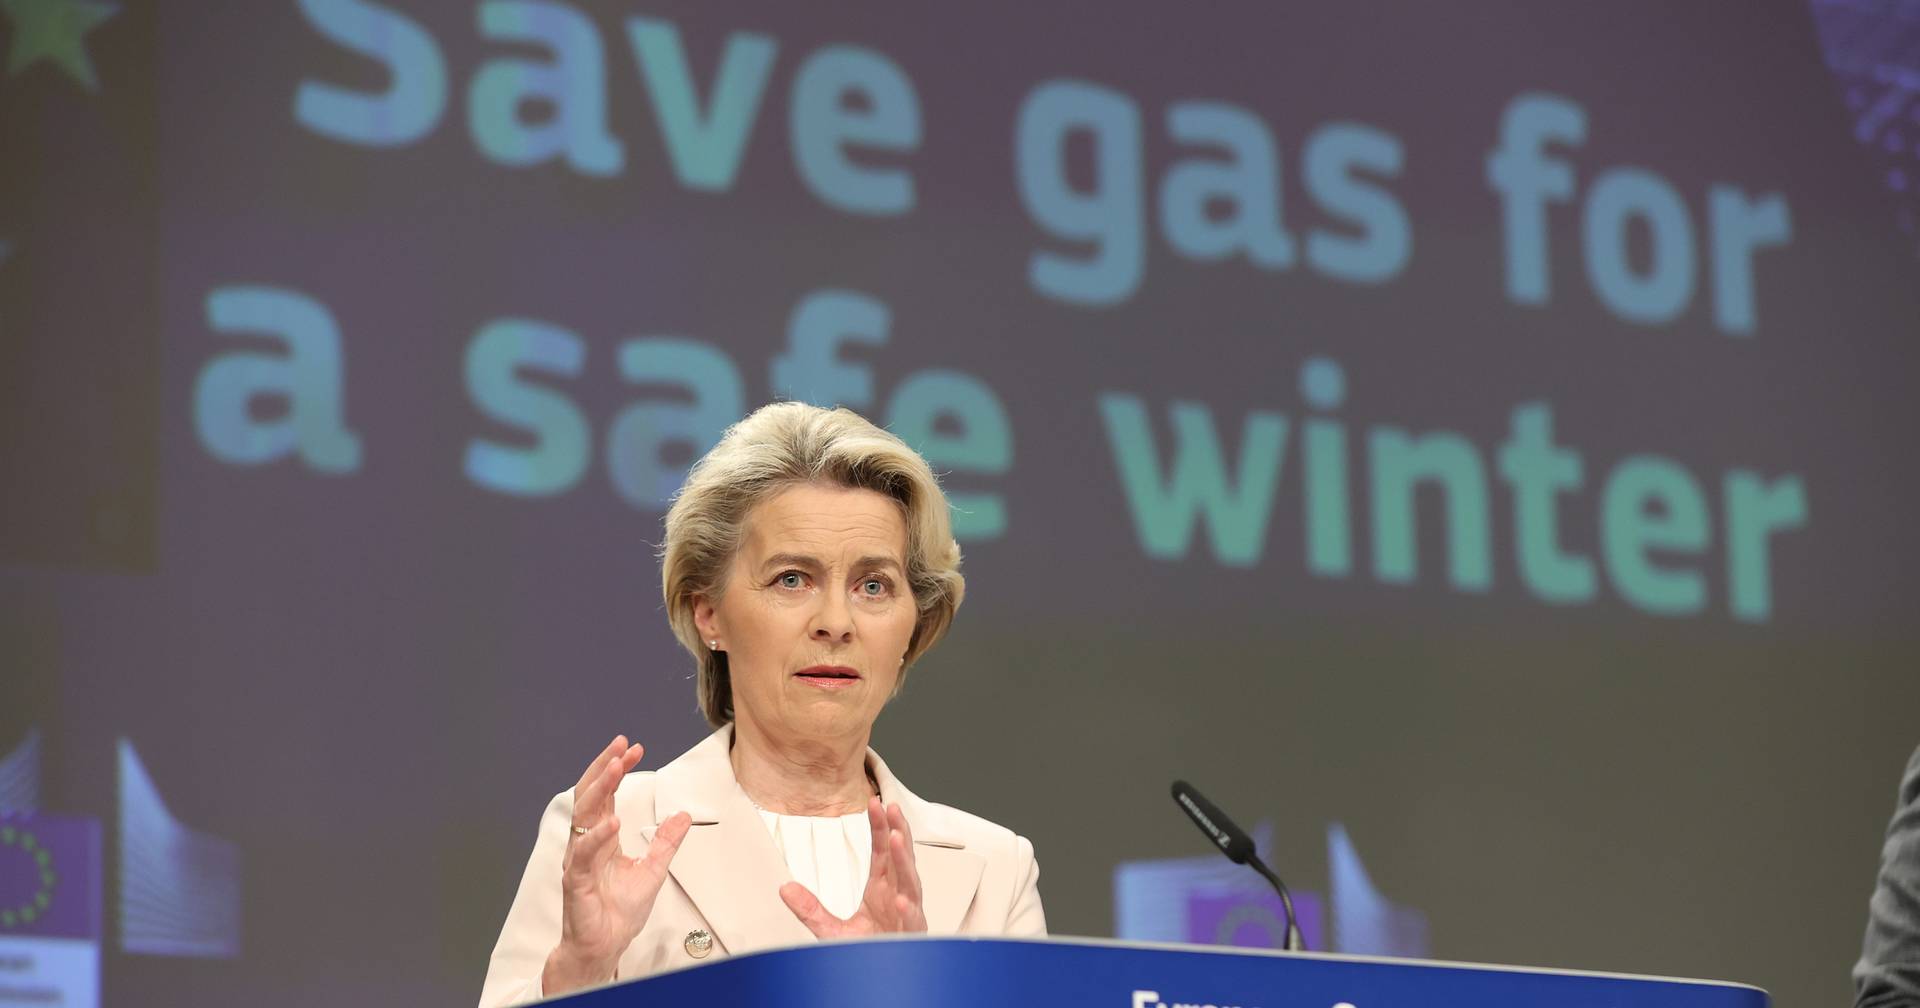 Poupança é vital para a segurança energética da Europa, diz von der Leyen